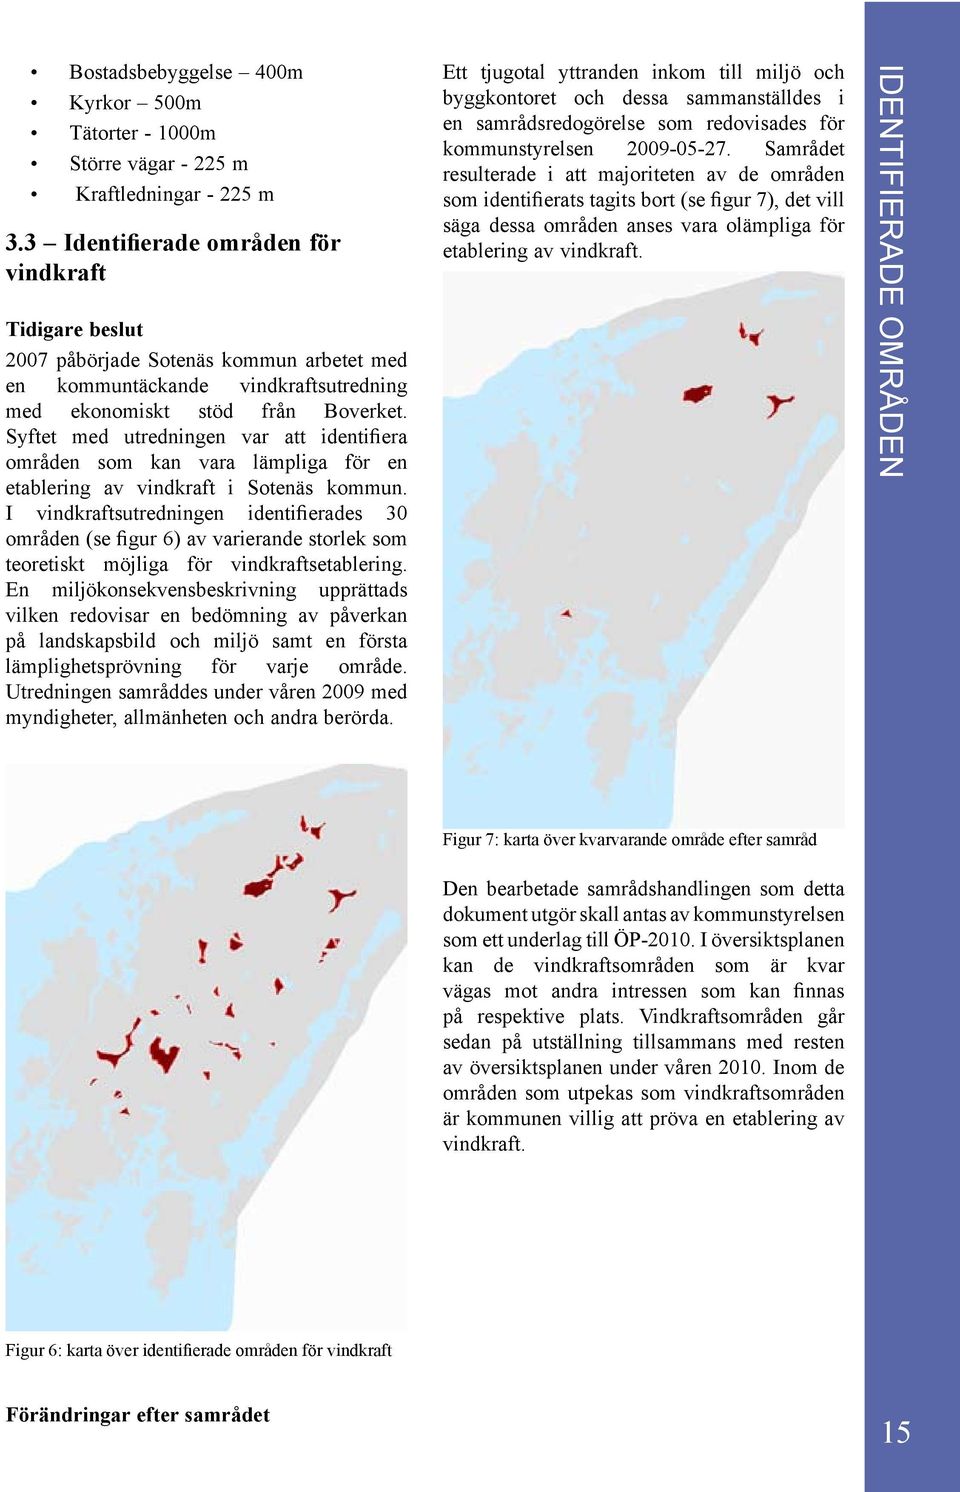 Syftet med utredningen var att identifiera områden som kan vara lämpliga för en etablering av vindkraft i Sotenäs kommun.